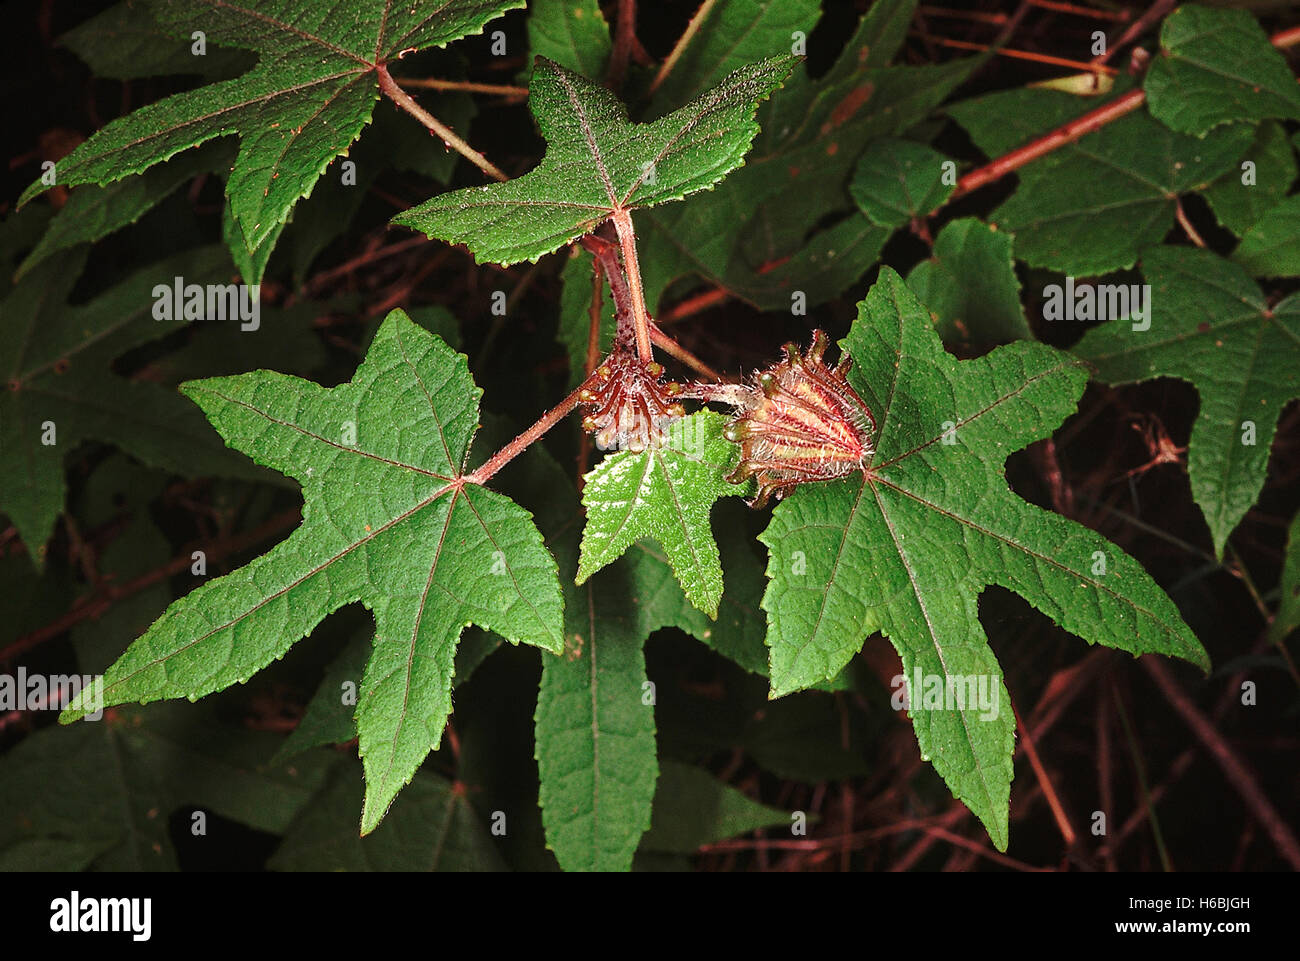 Famiglia: Malvaceae, Hibiscus sp. - Calice e epicalyx. Una scalata Hibiscus con spine agganciata sullo stelo. Foto Stock